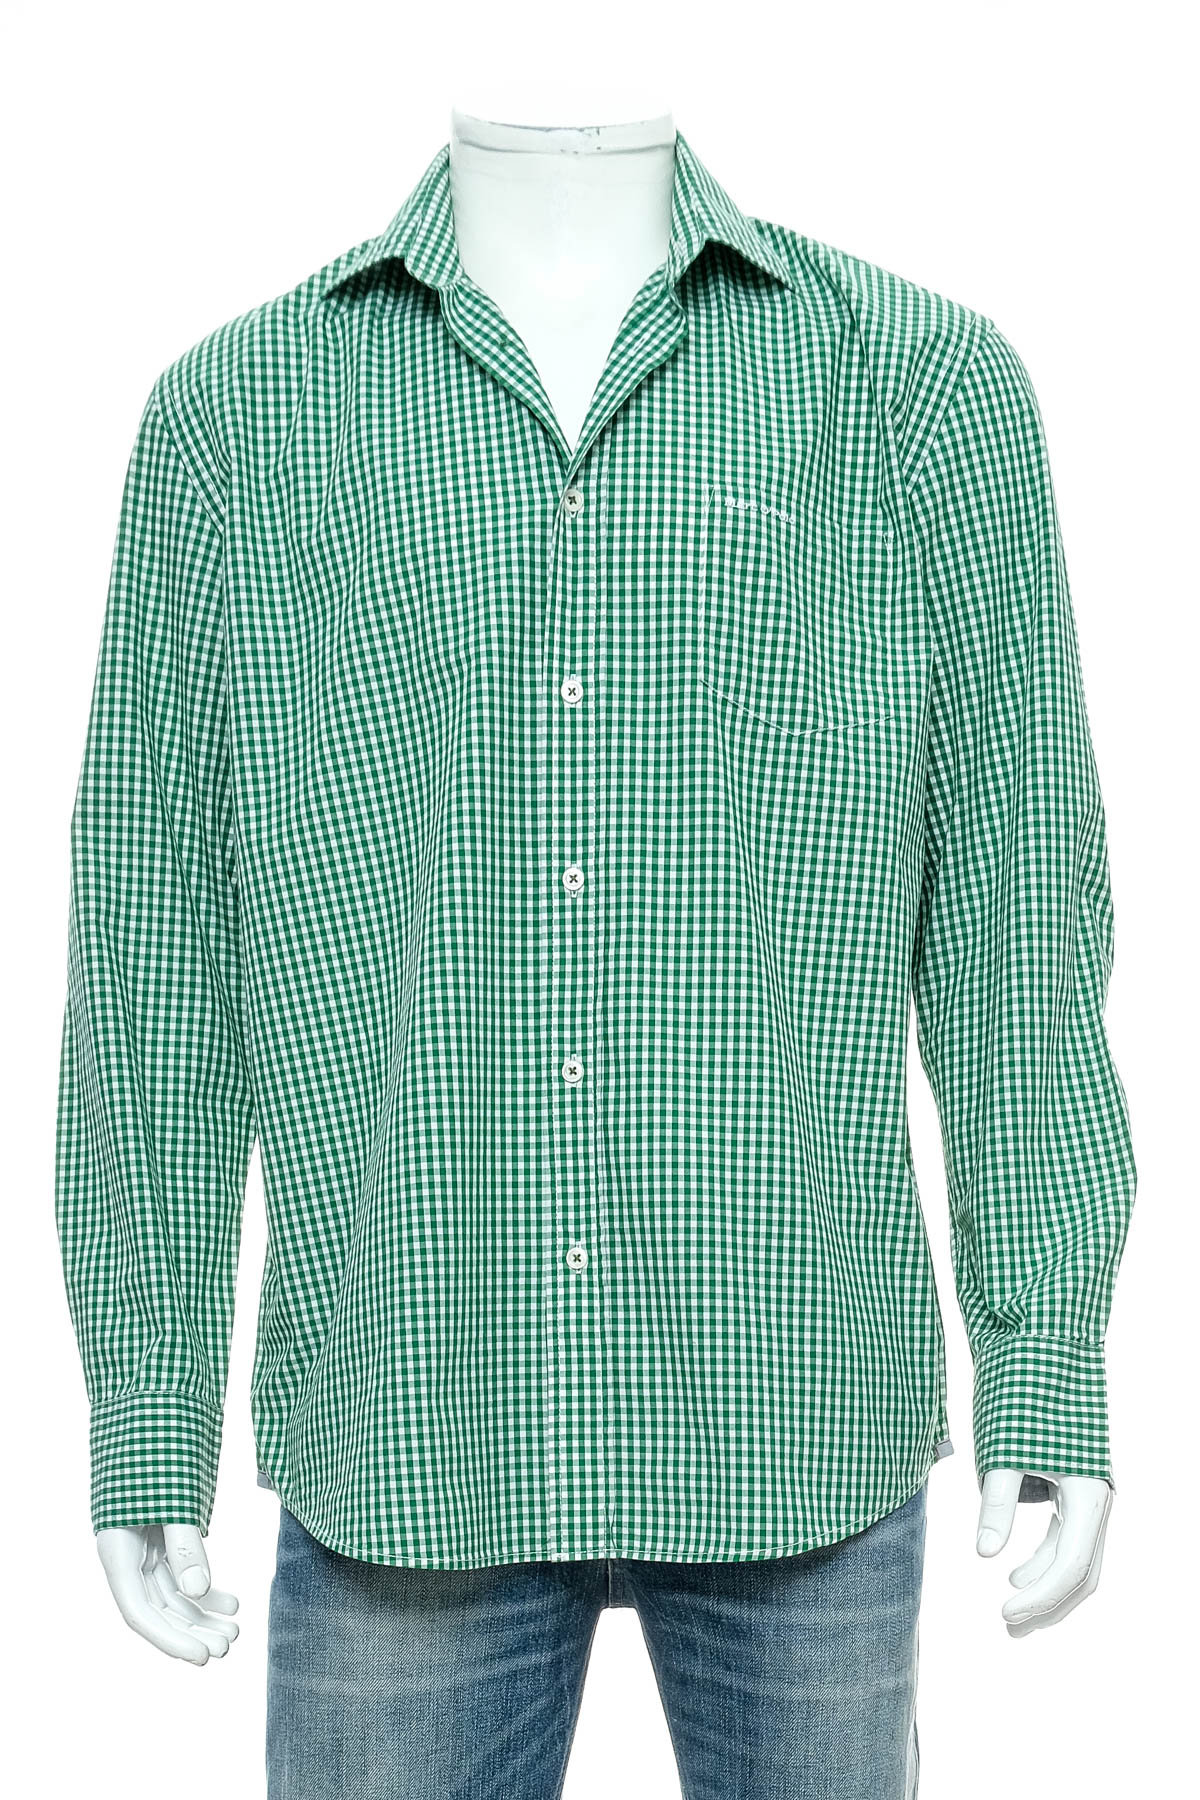 Ανδρικό πουκάμισο - Marc O' Polo - 0